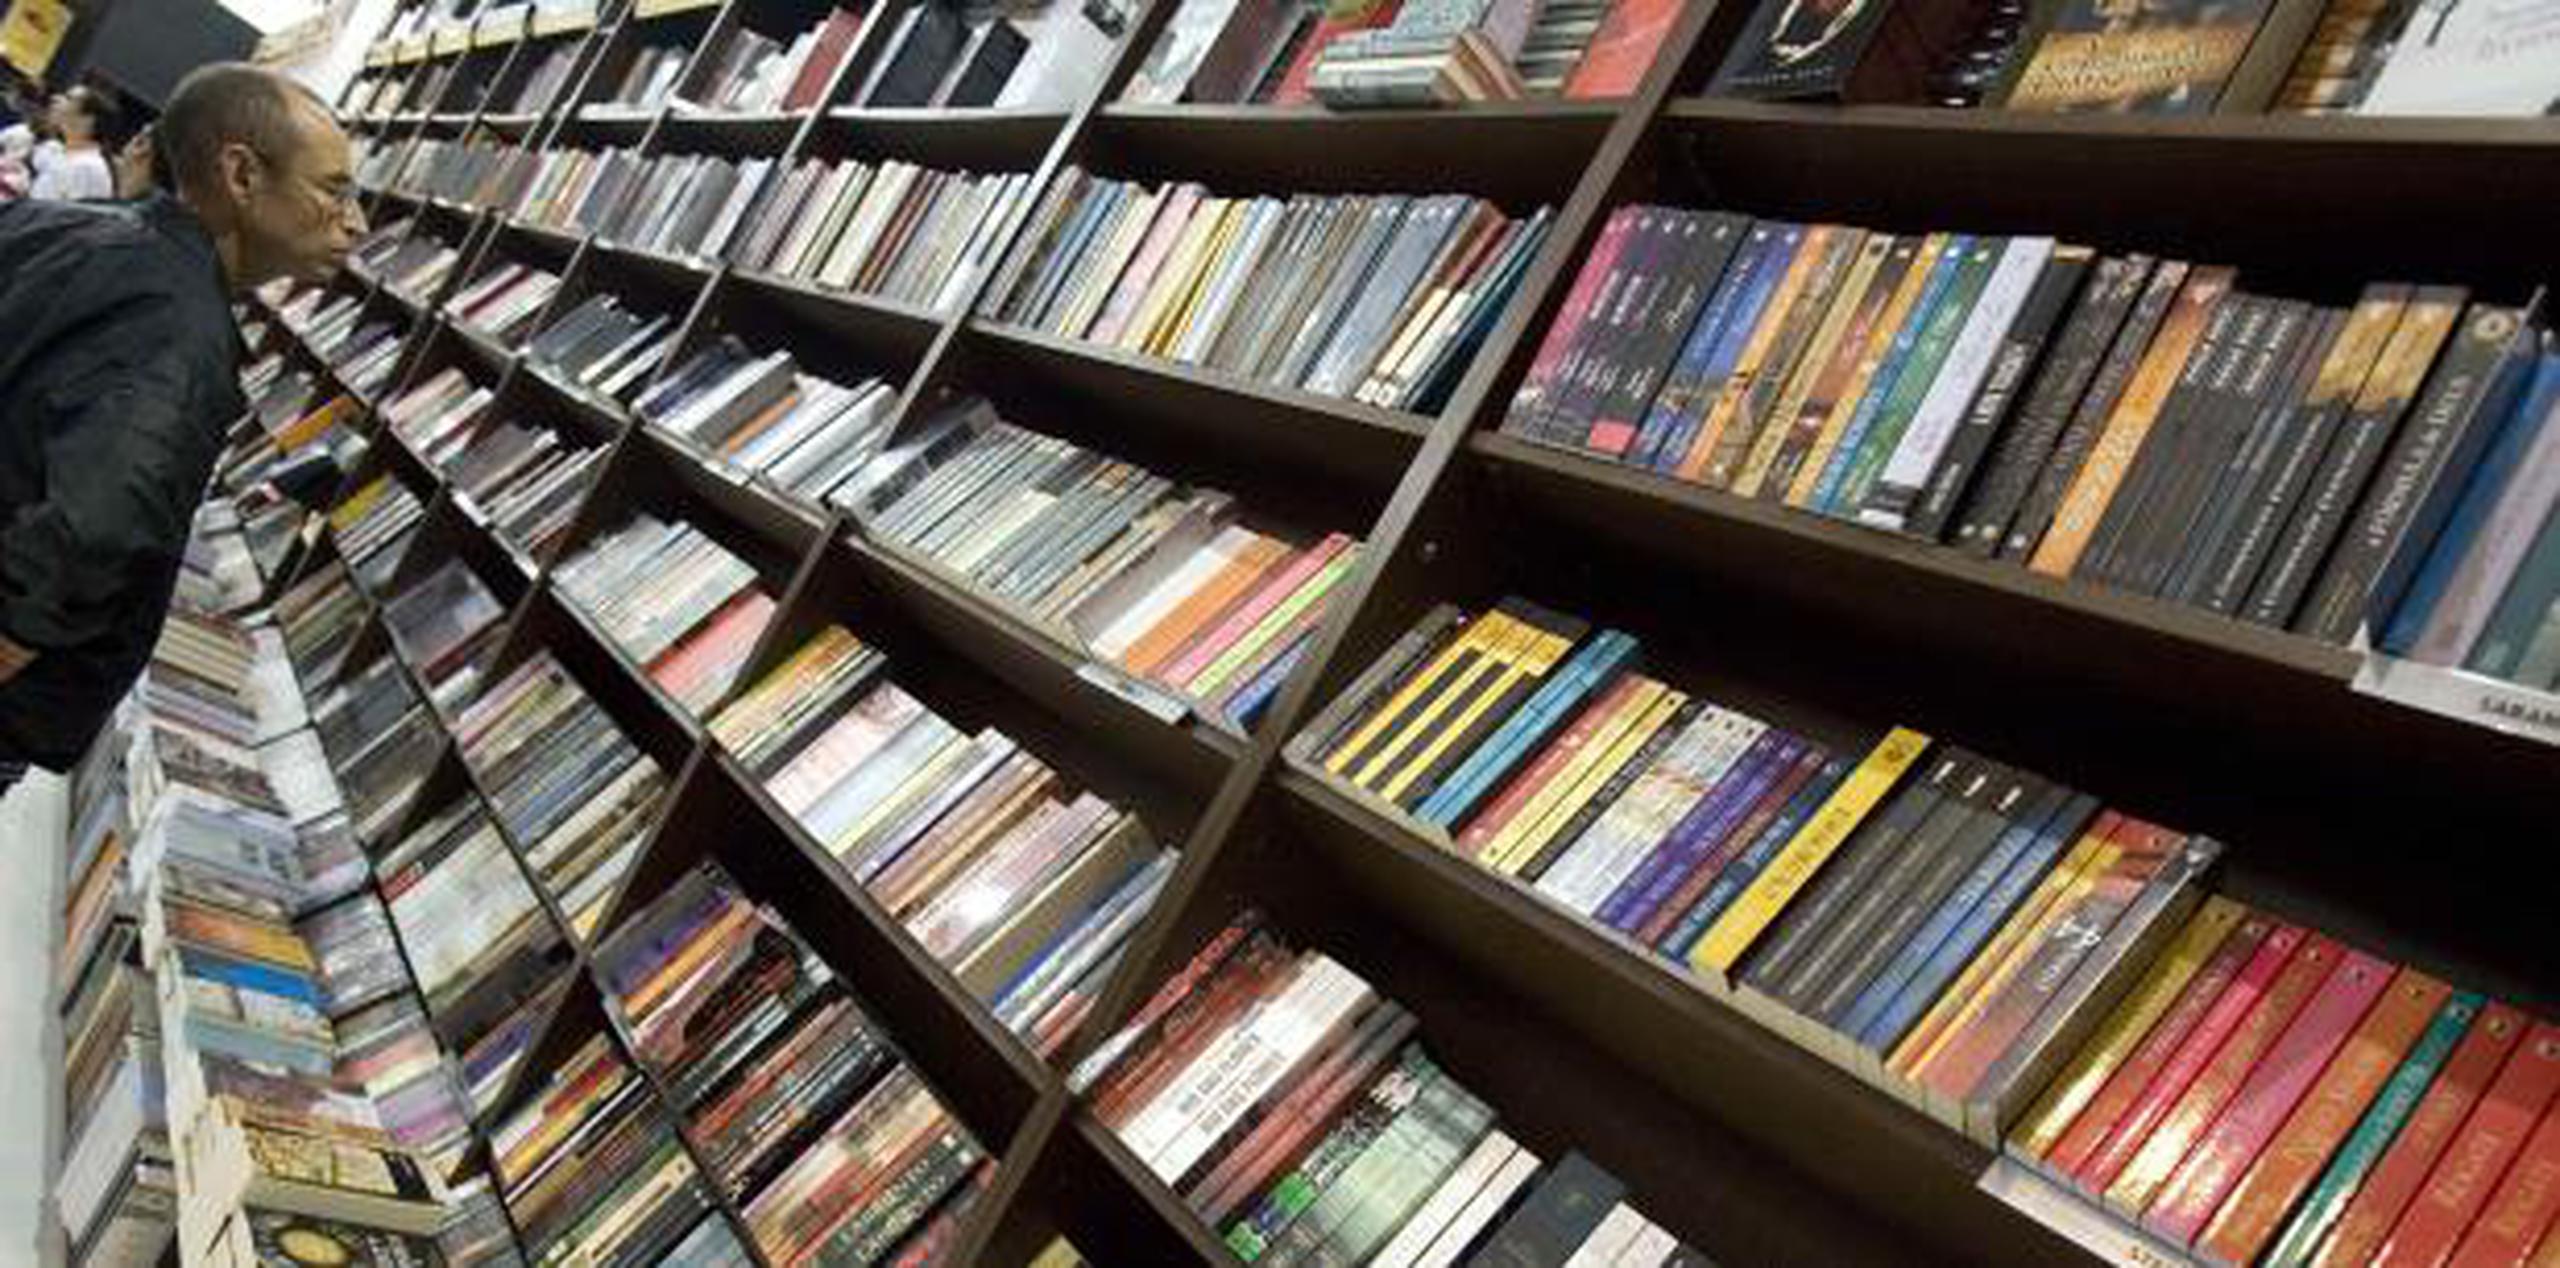 Puedes adquirir lo libros de manera online o en cualquier tienda de libros de su preverencia. (Archivo)